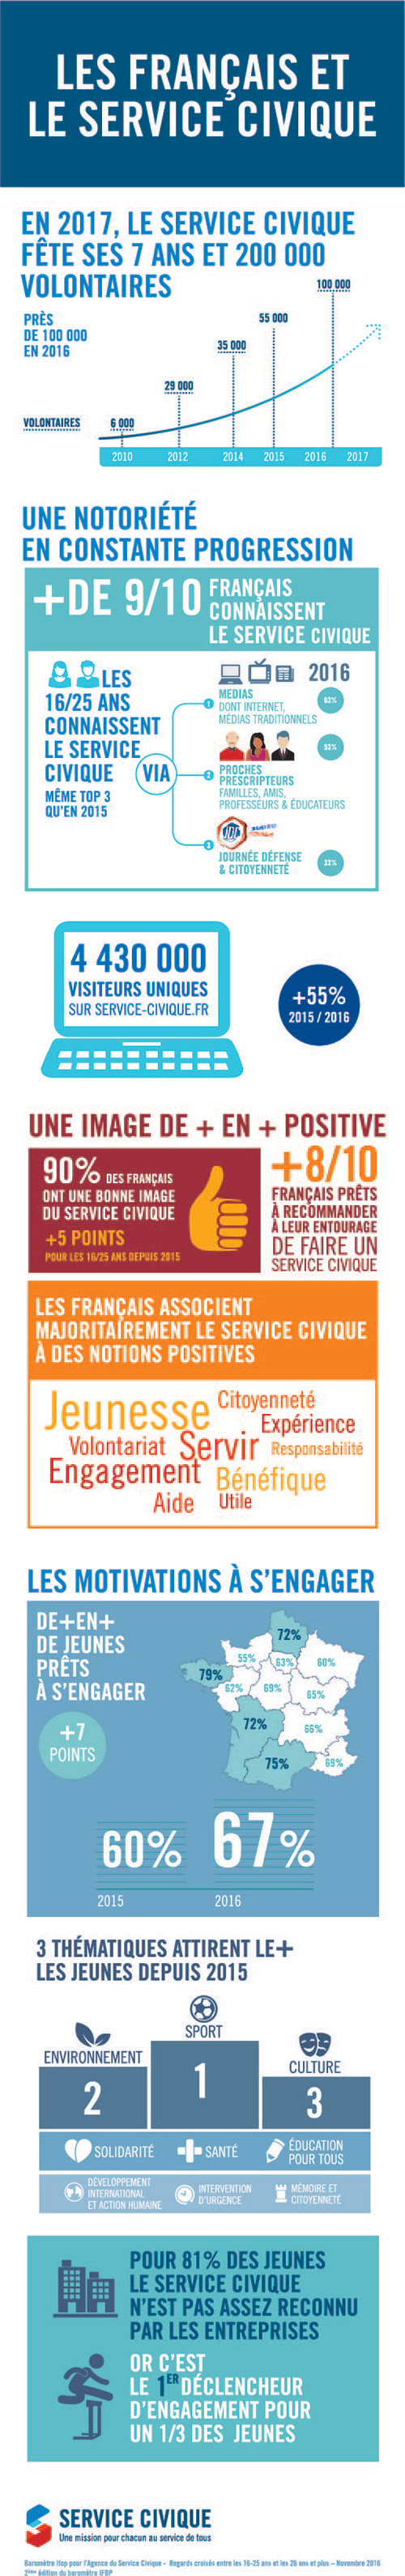 Infographie service civique